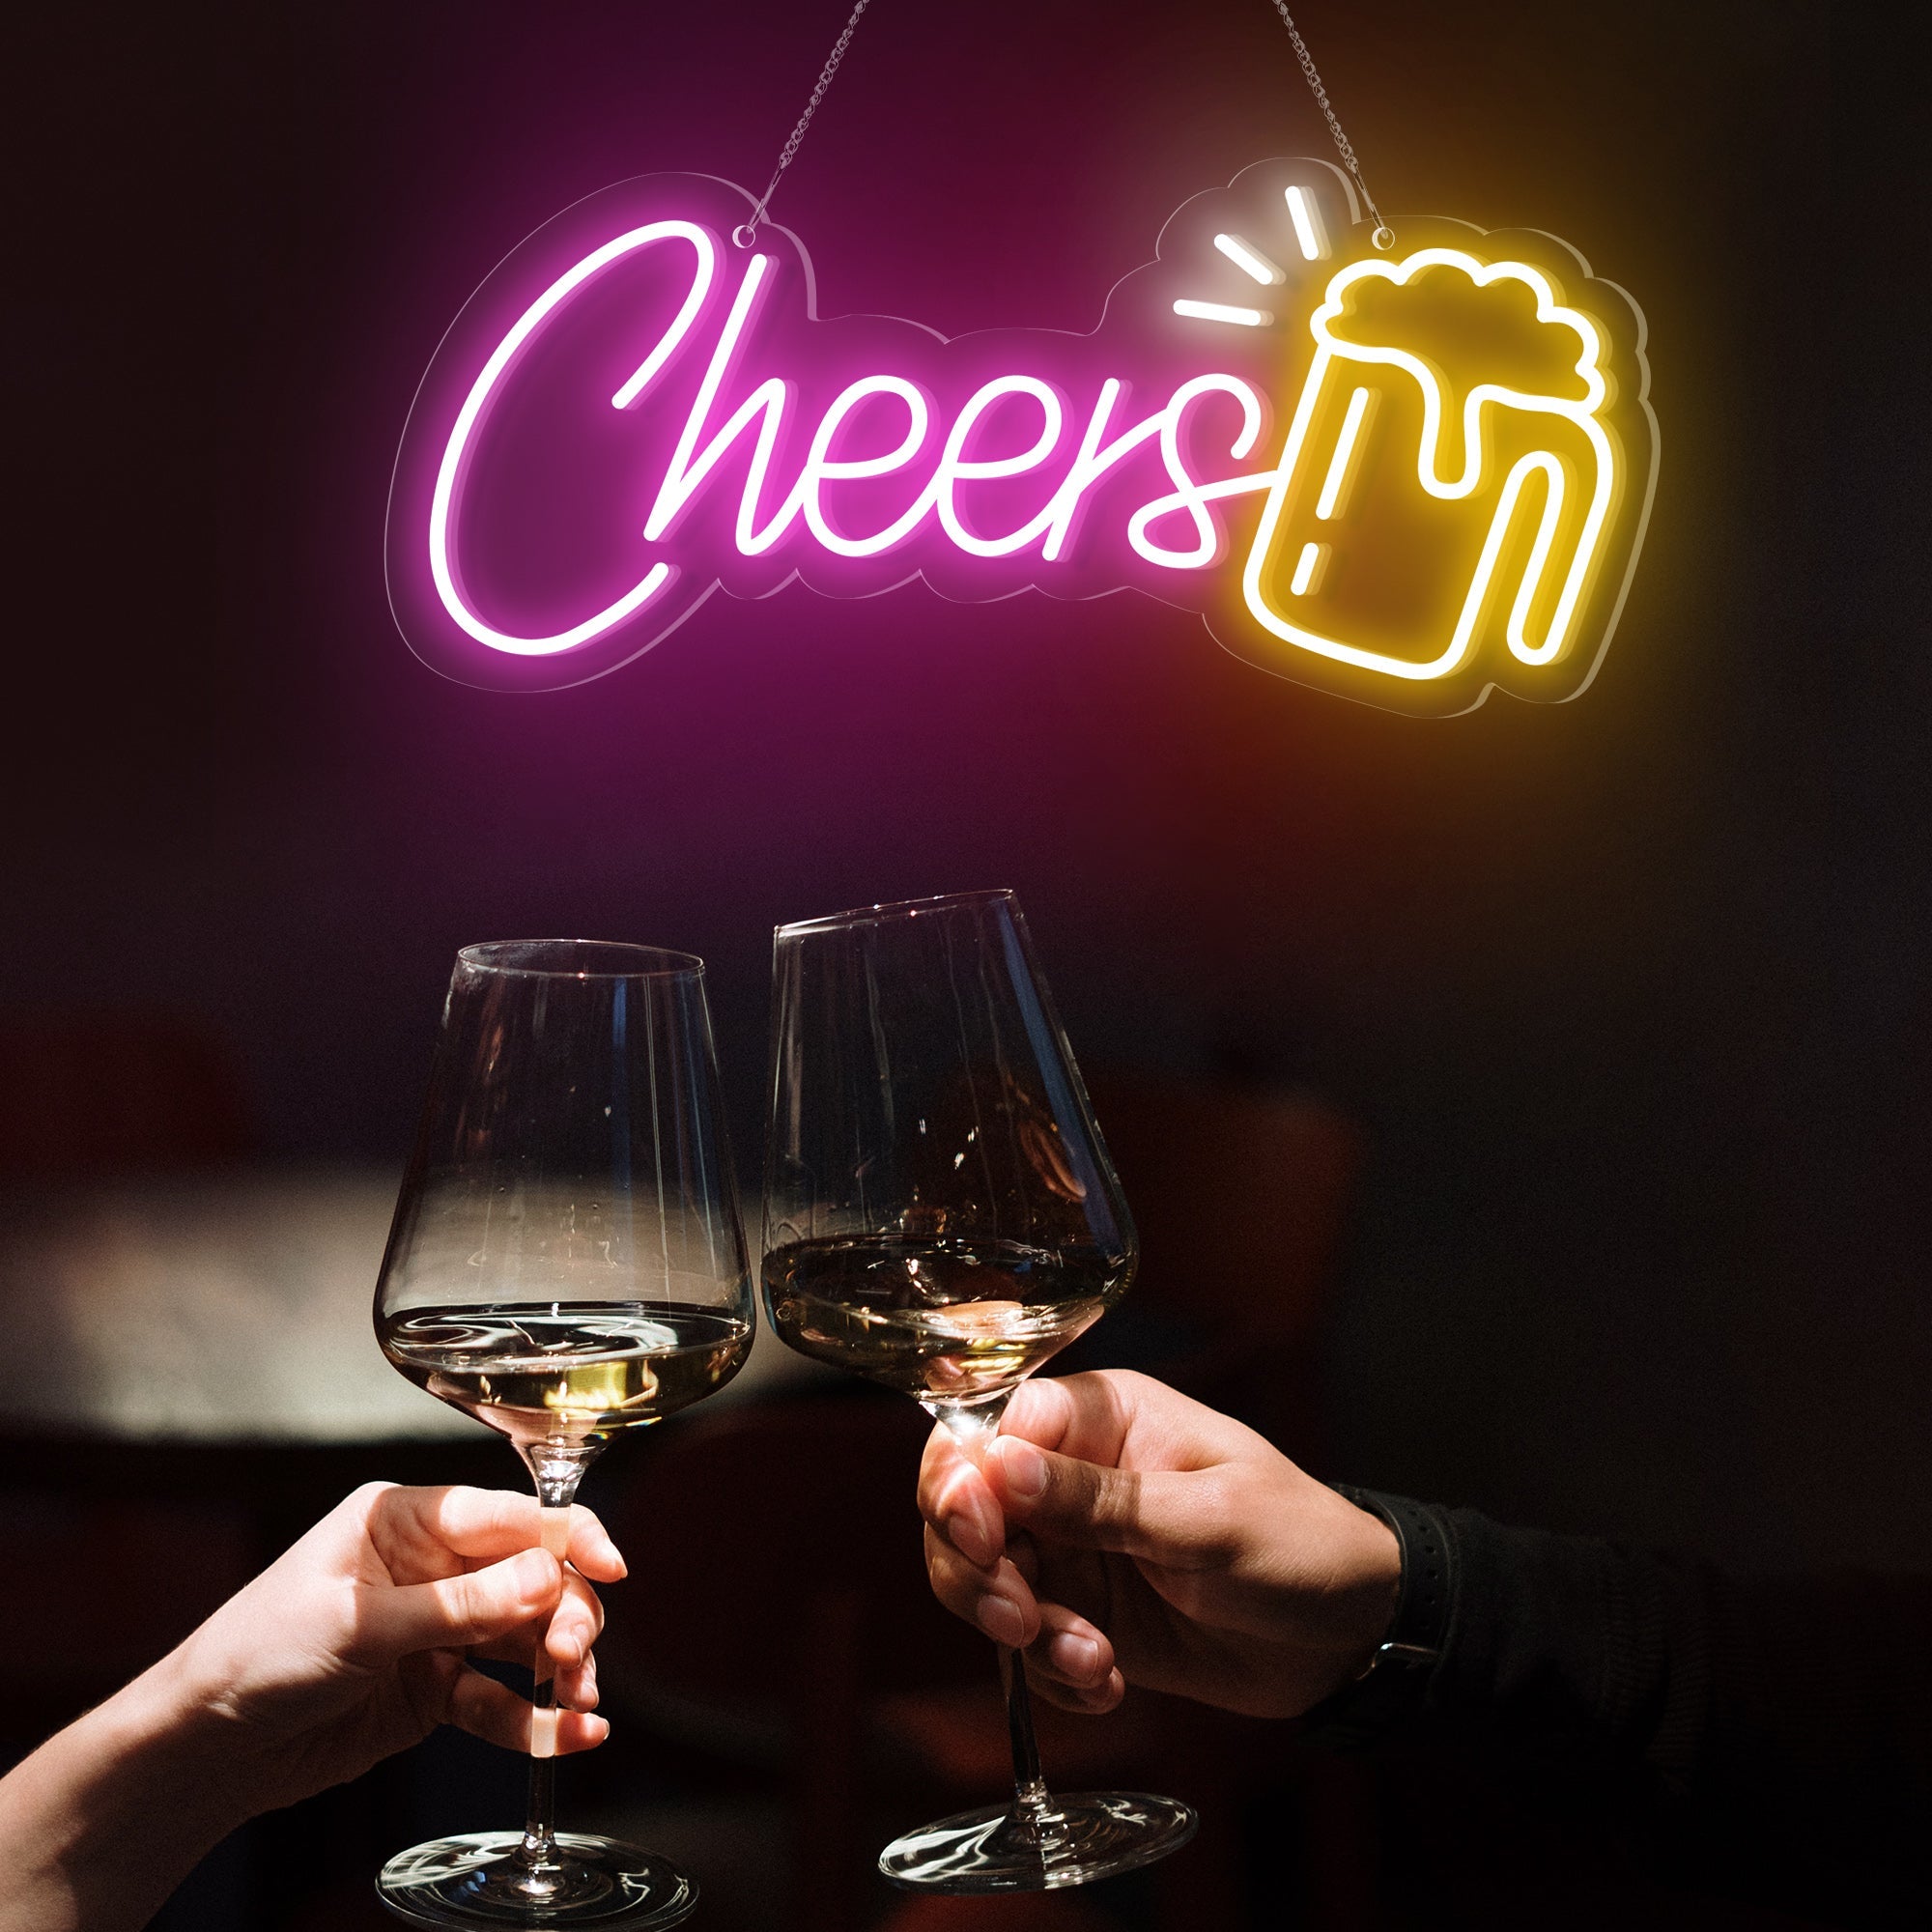 "Cheers" Word Beer Mug Neon Sign